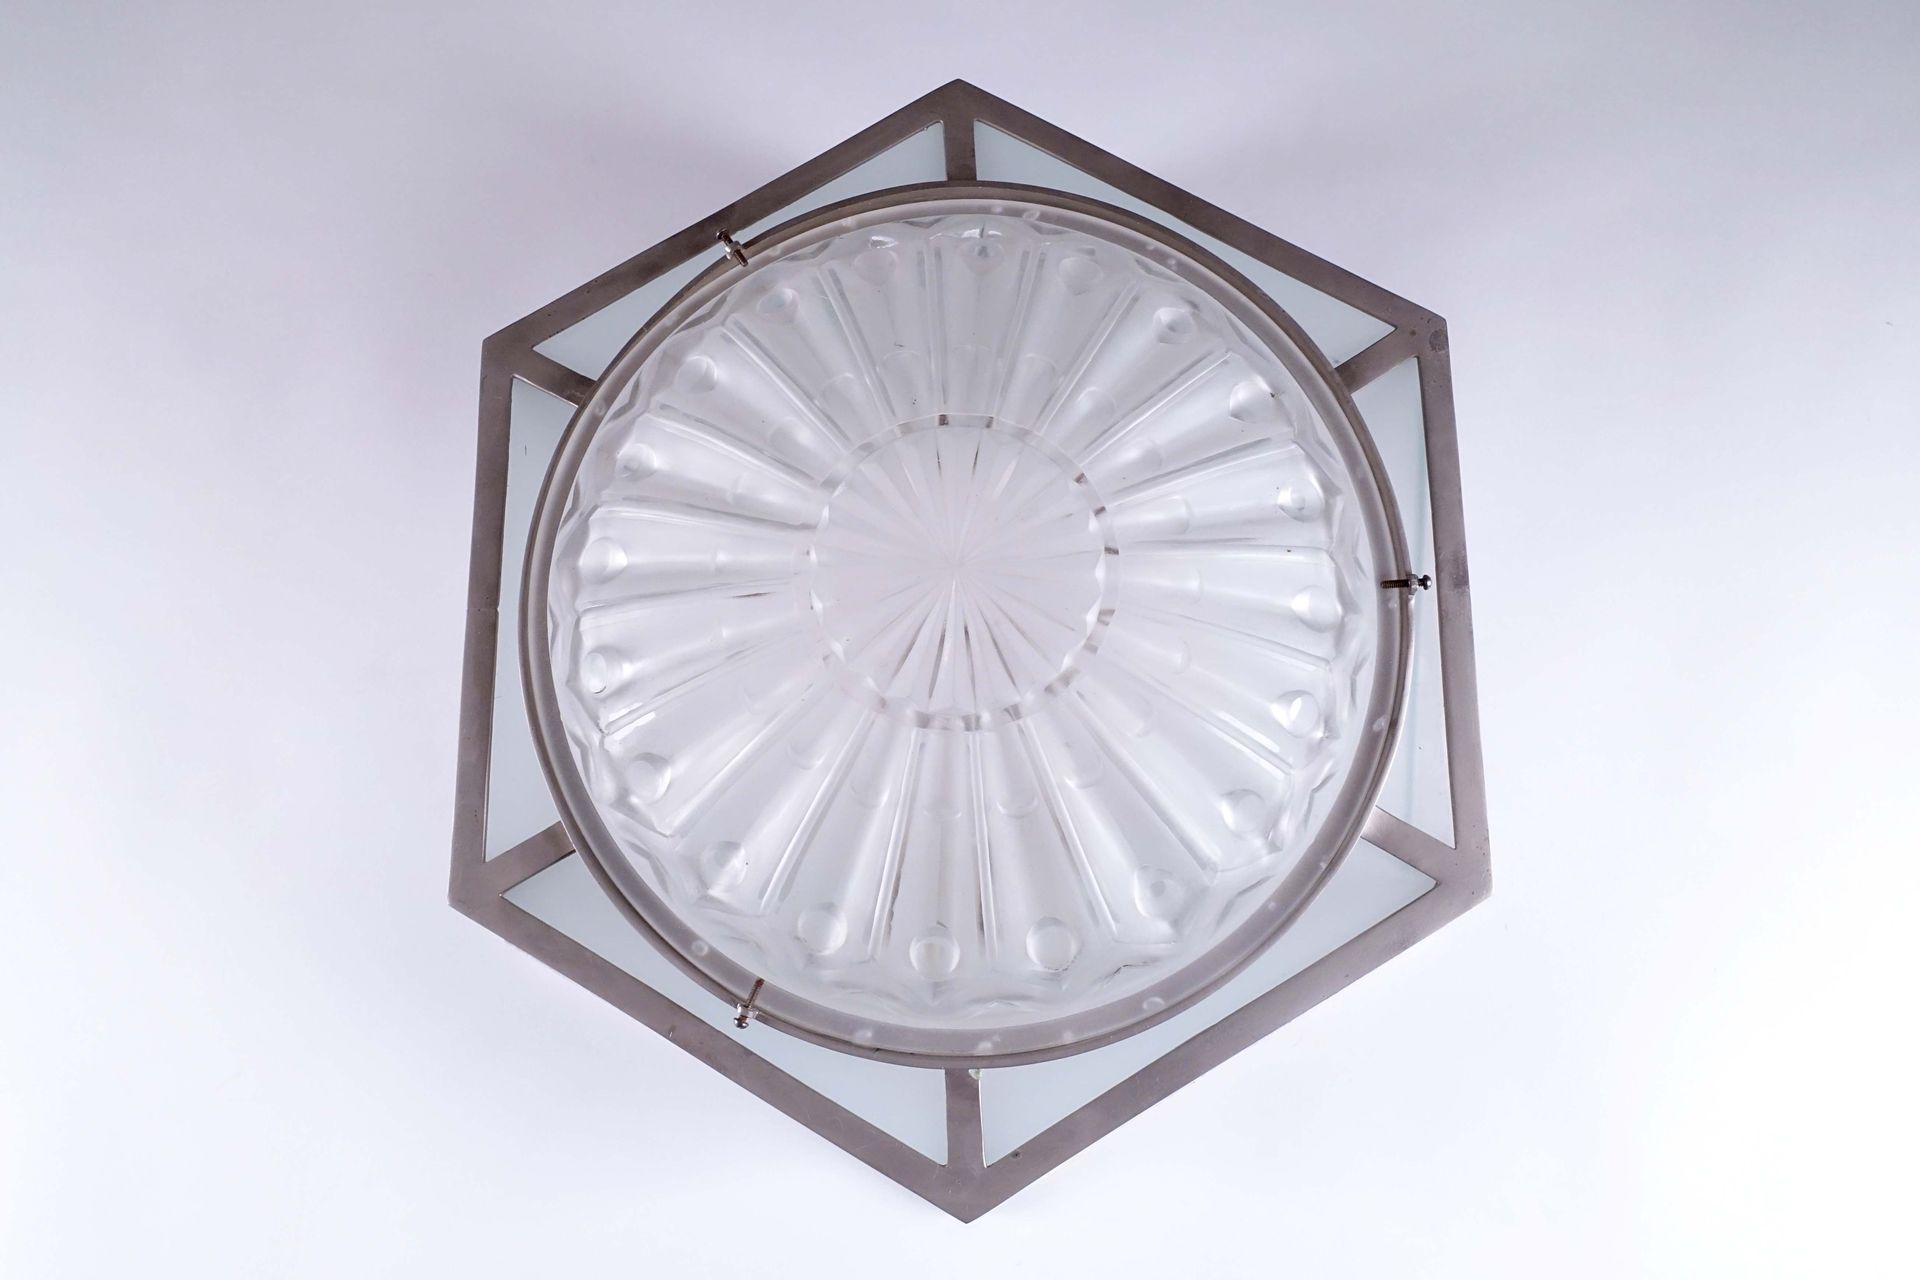 Plafonnier Art Déco. 六角形，带有几何图案的压制和磨砂模制玻璃穹顶。金属框架。直径：50厘米。状态 : 无事故。